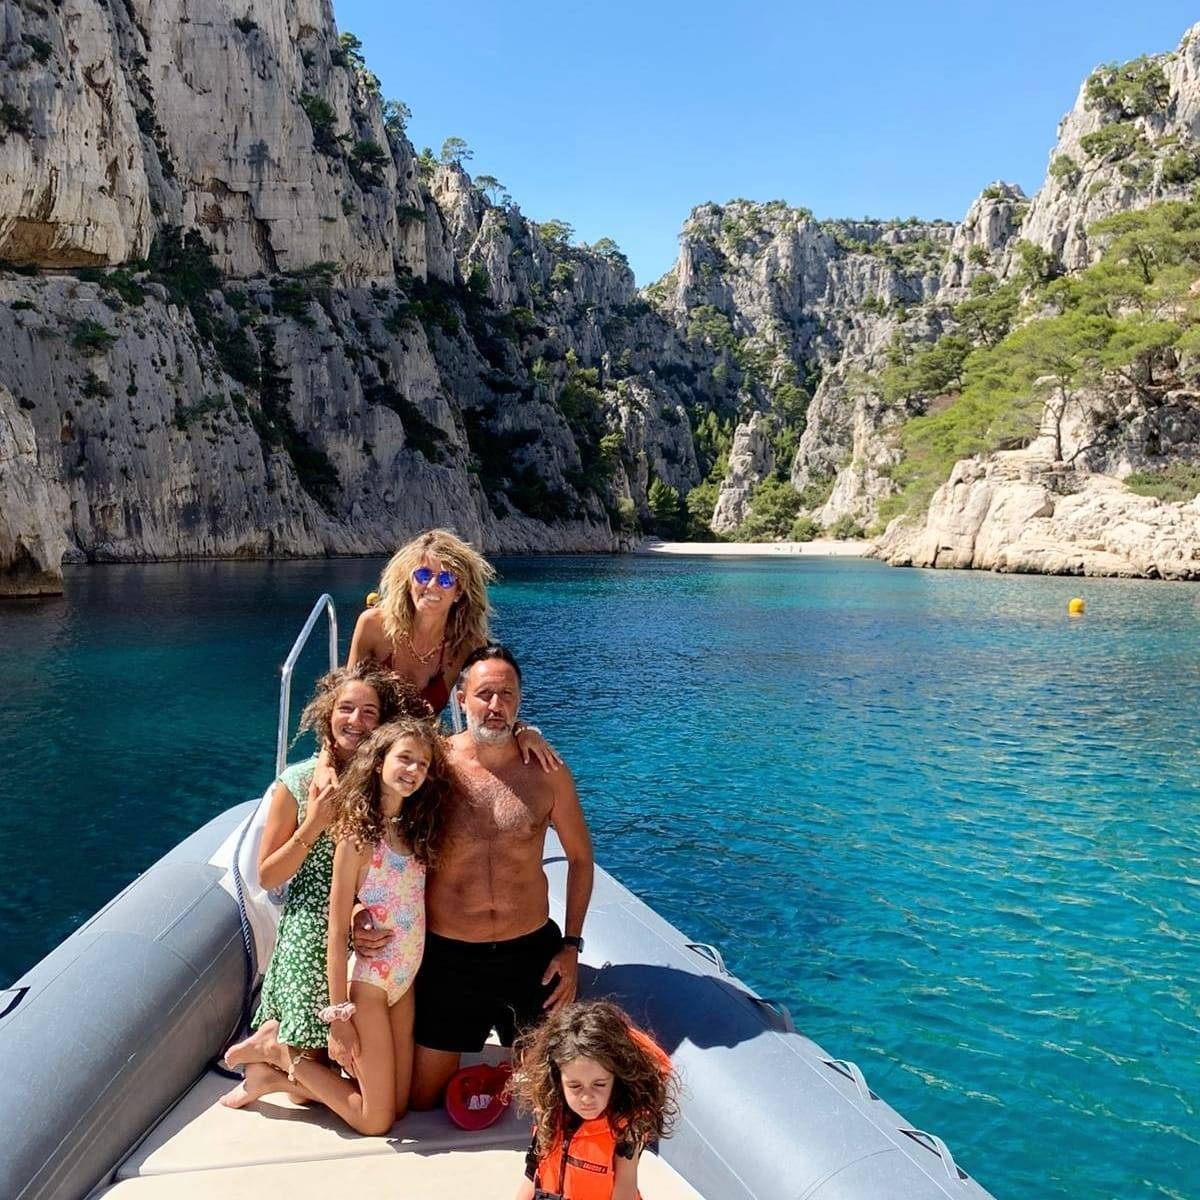 Visiter le Parc National des Calanques de Marseille en bateau avec un skipper professionnel